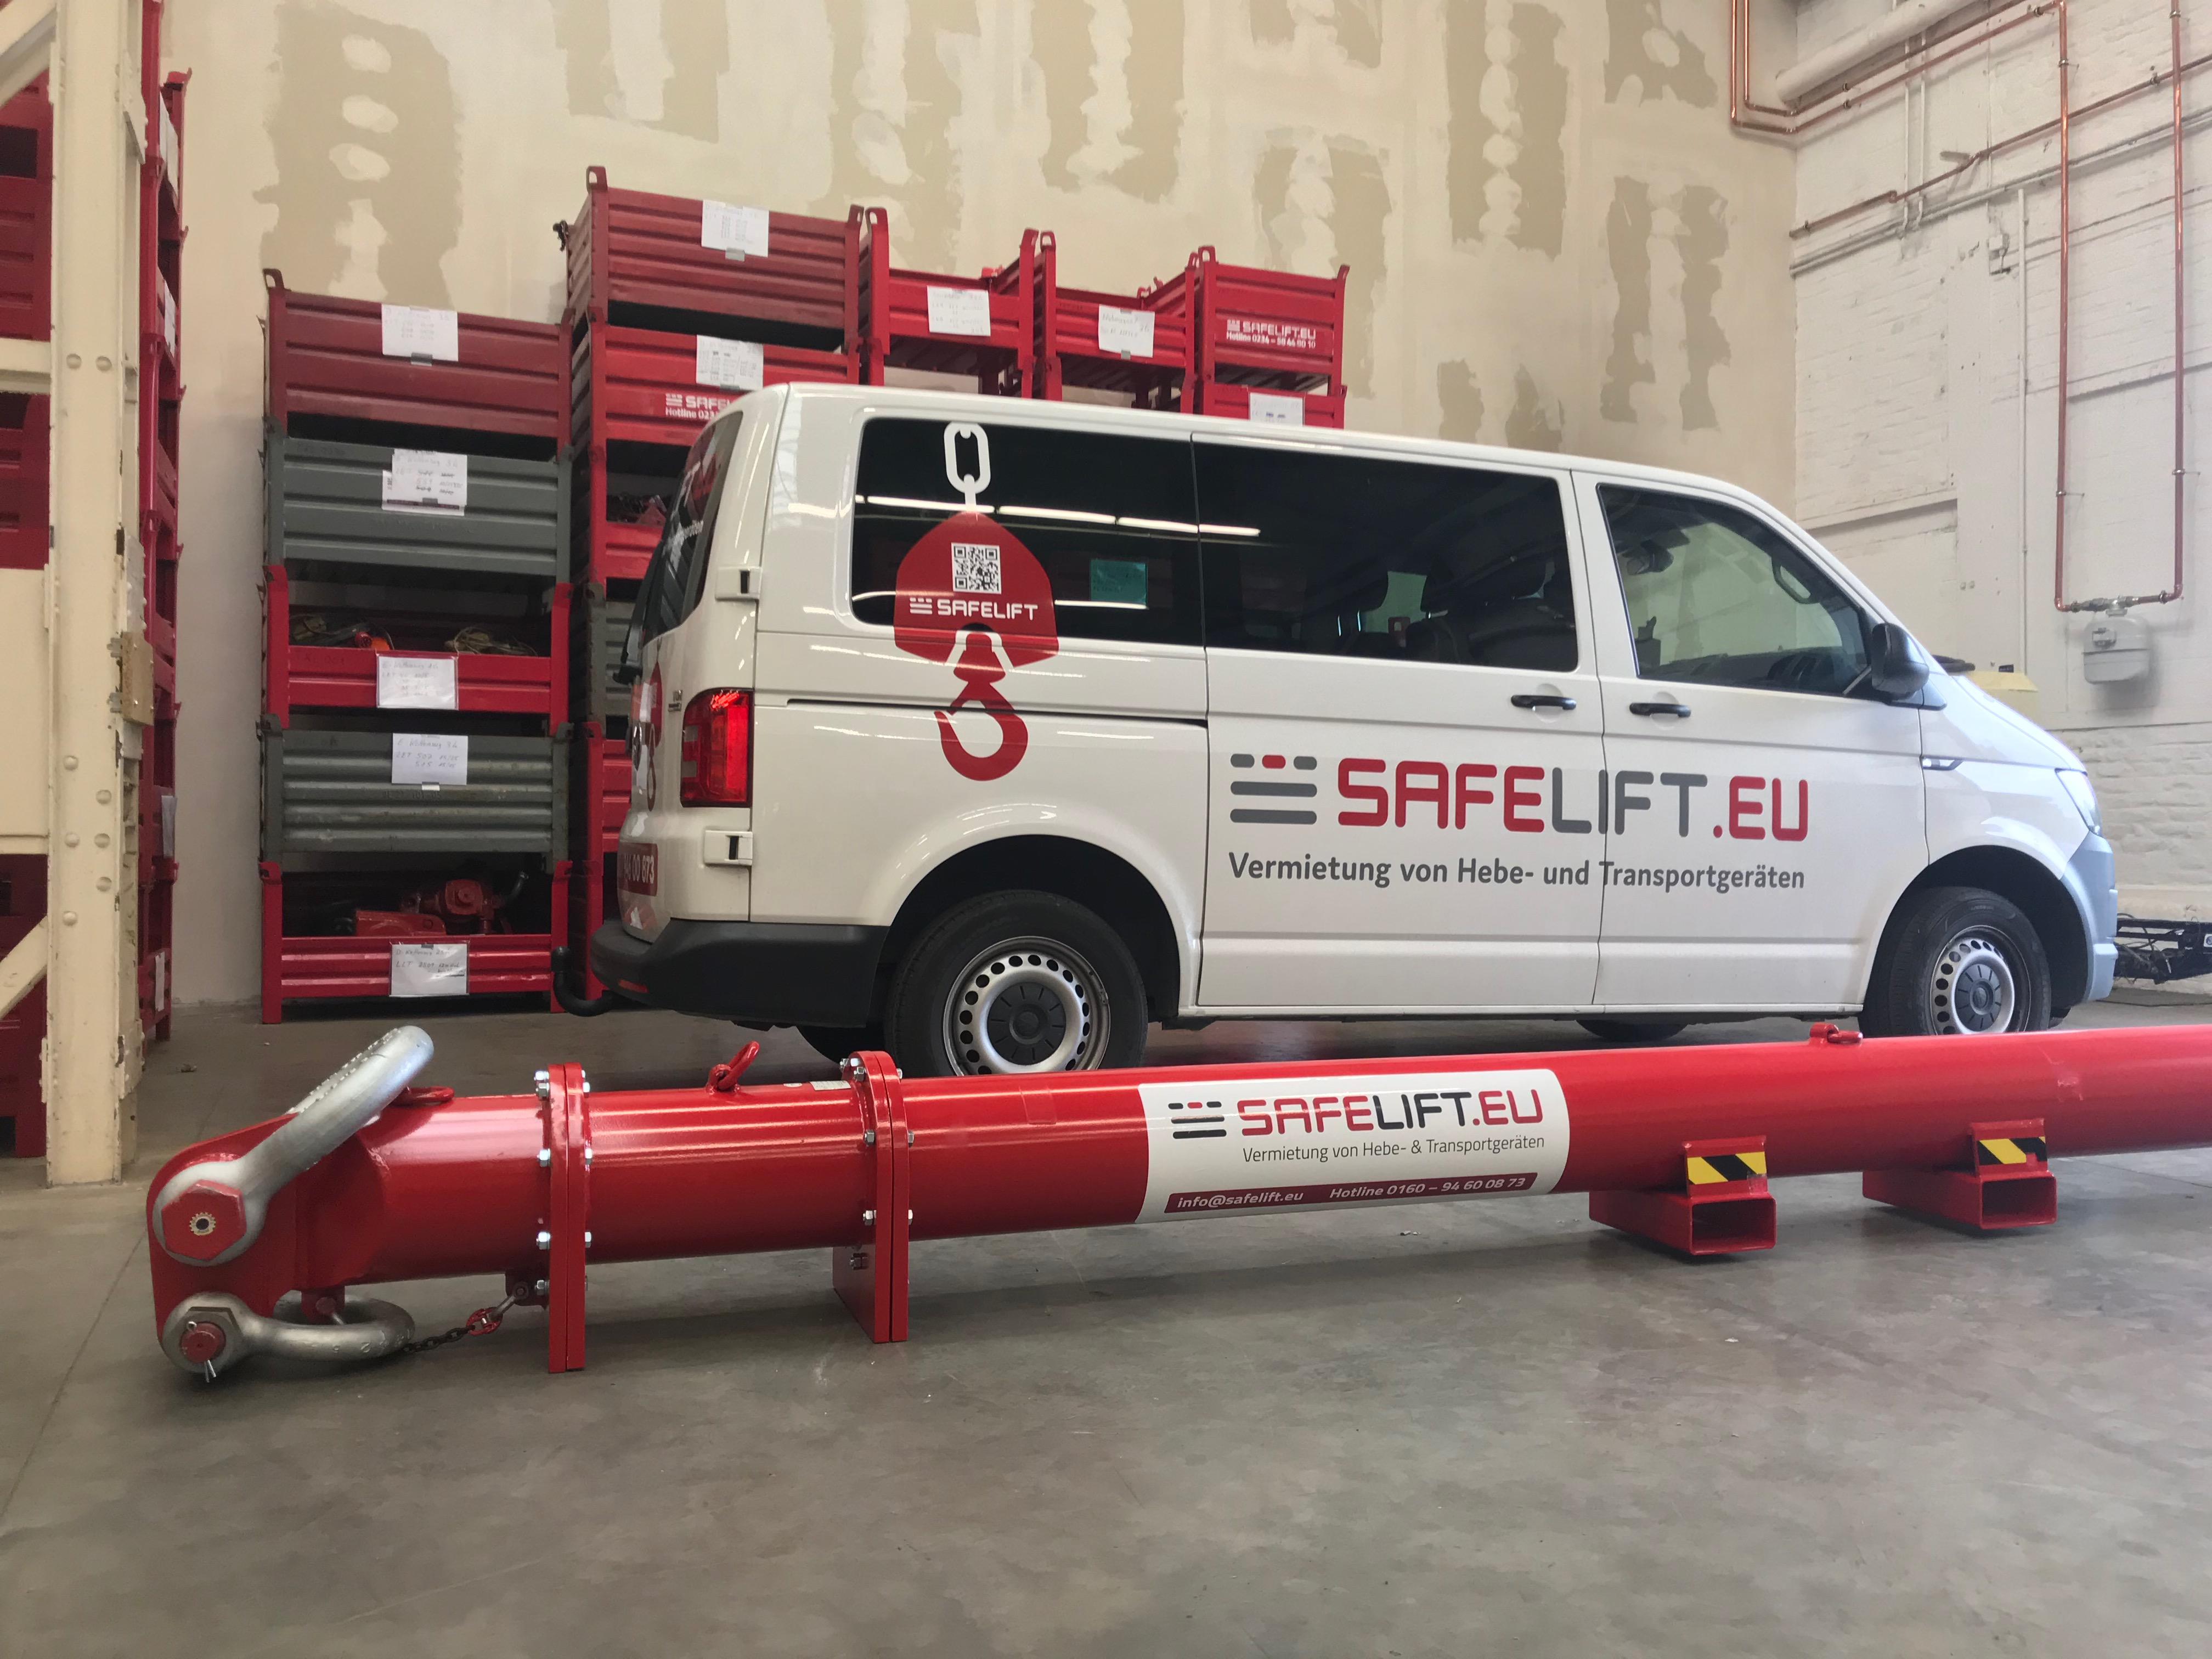 SAFELIFT GmbH, Herner Strasse 299 in Bochum